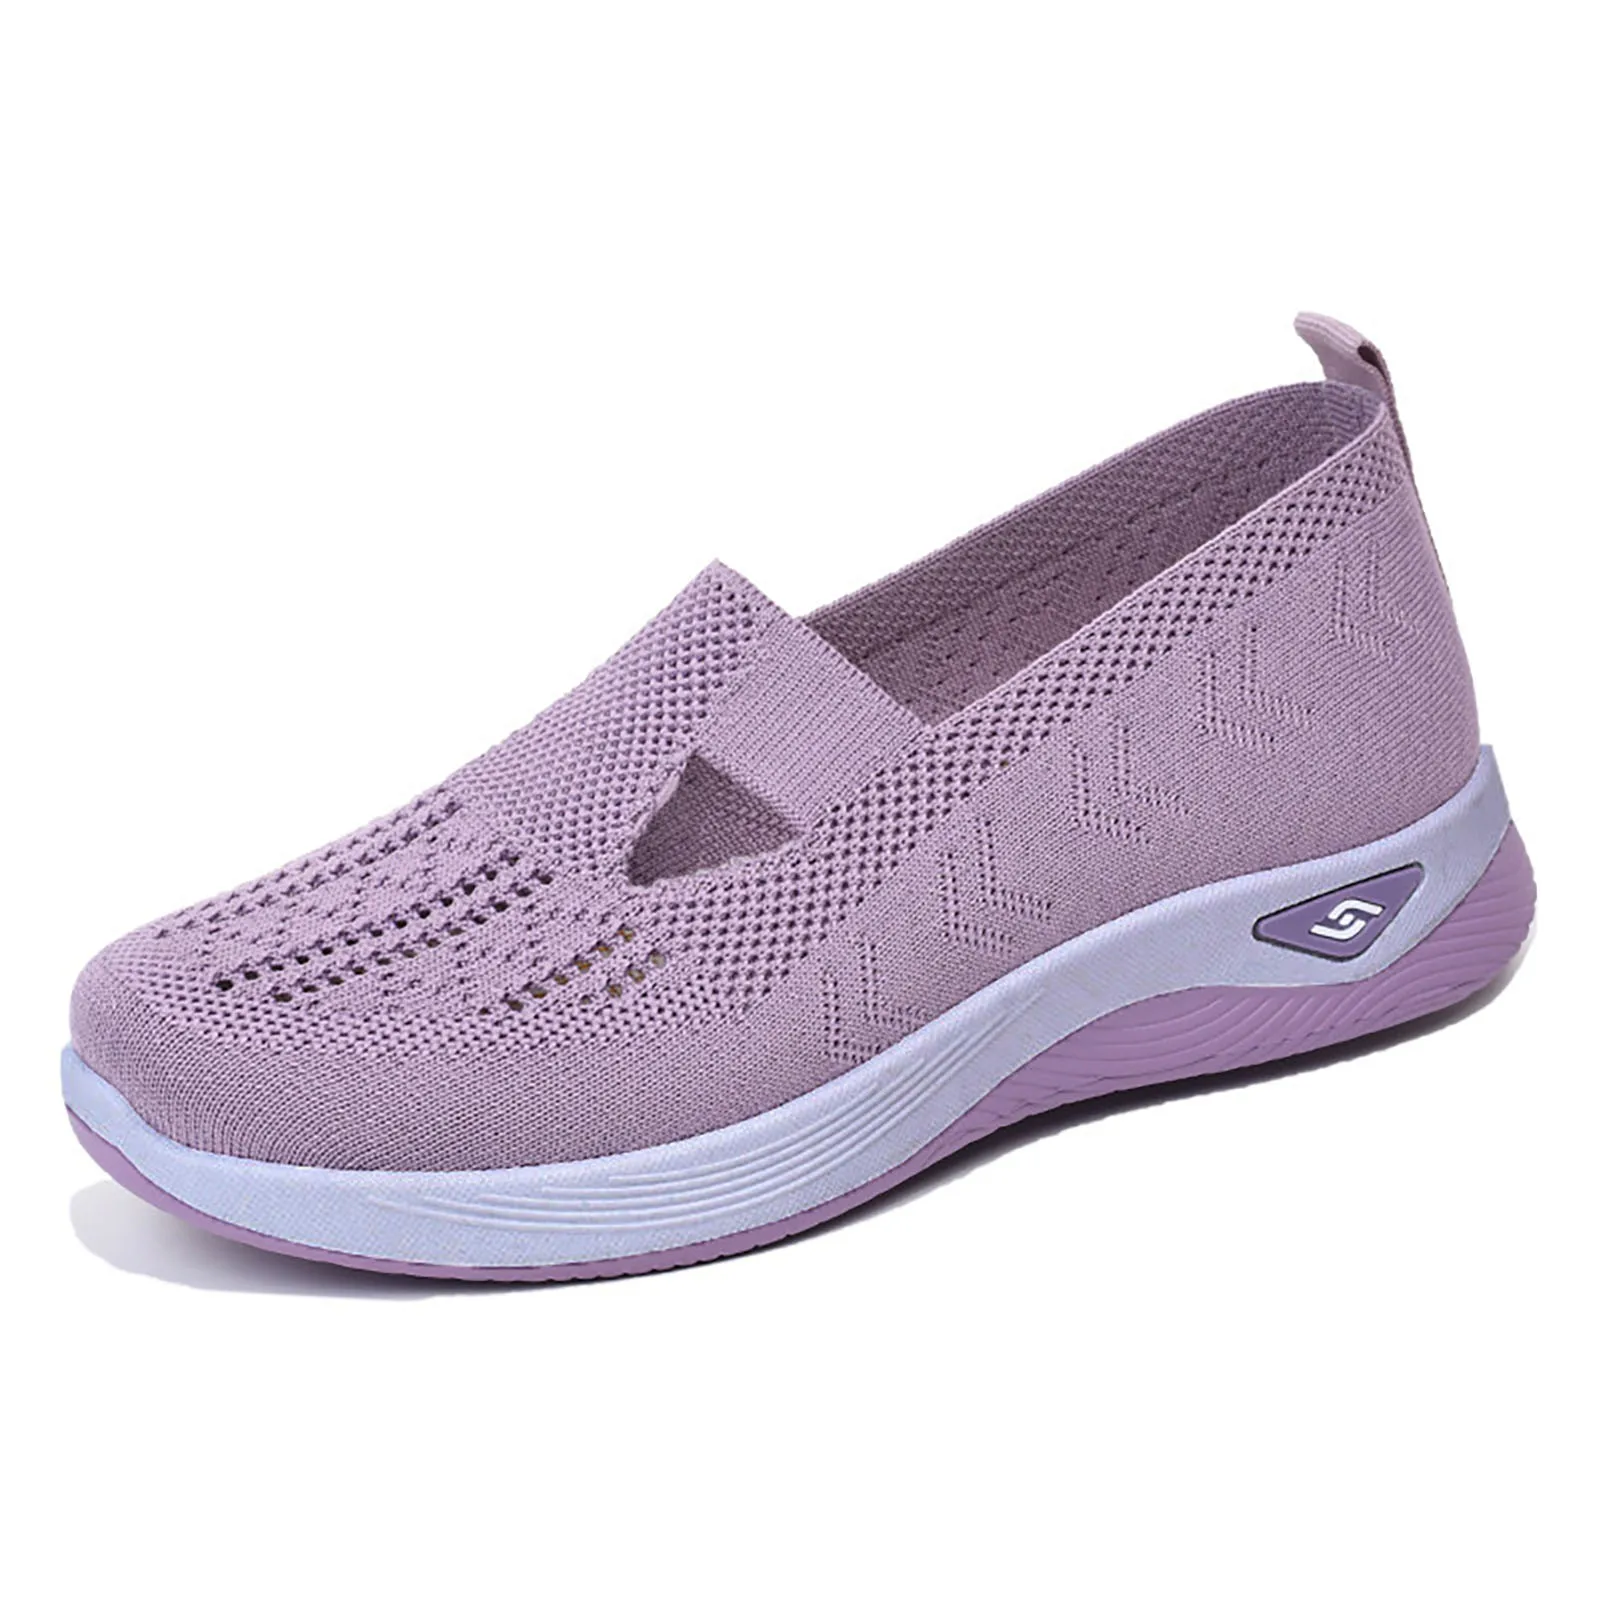 

Women's Mesh Walking Sneaker Non-slipped Soft-soled Shoes Gift for Girl friend Female Lover